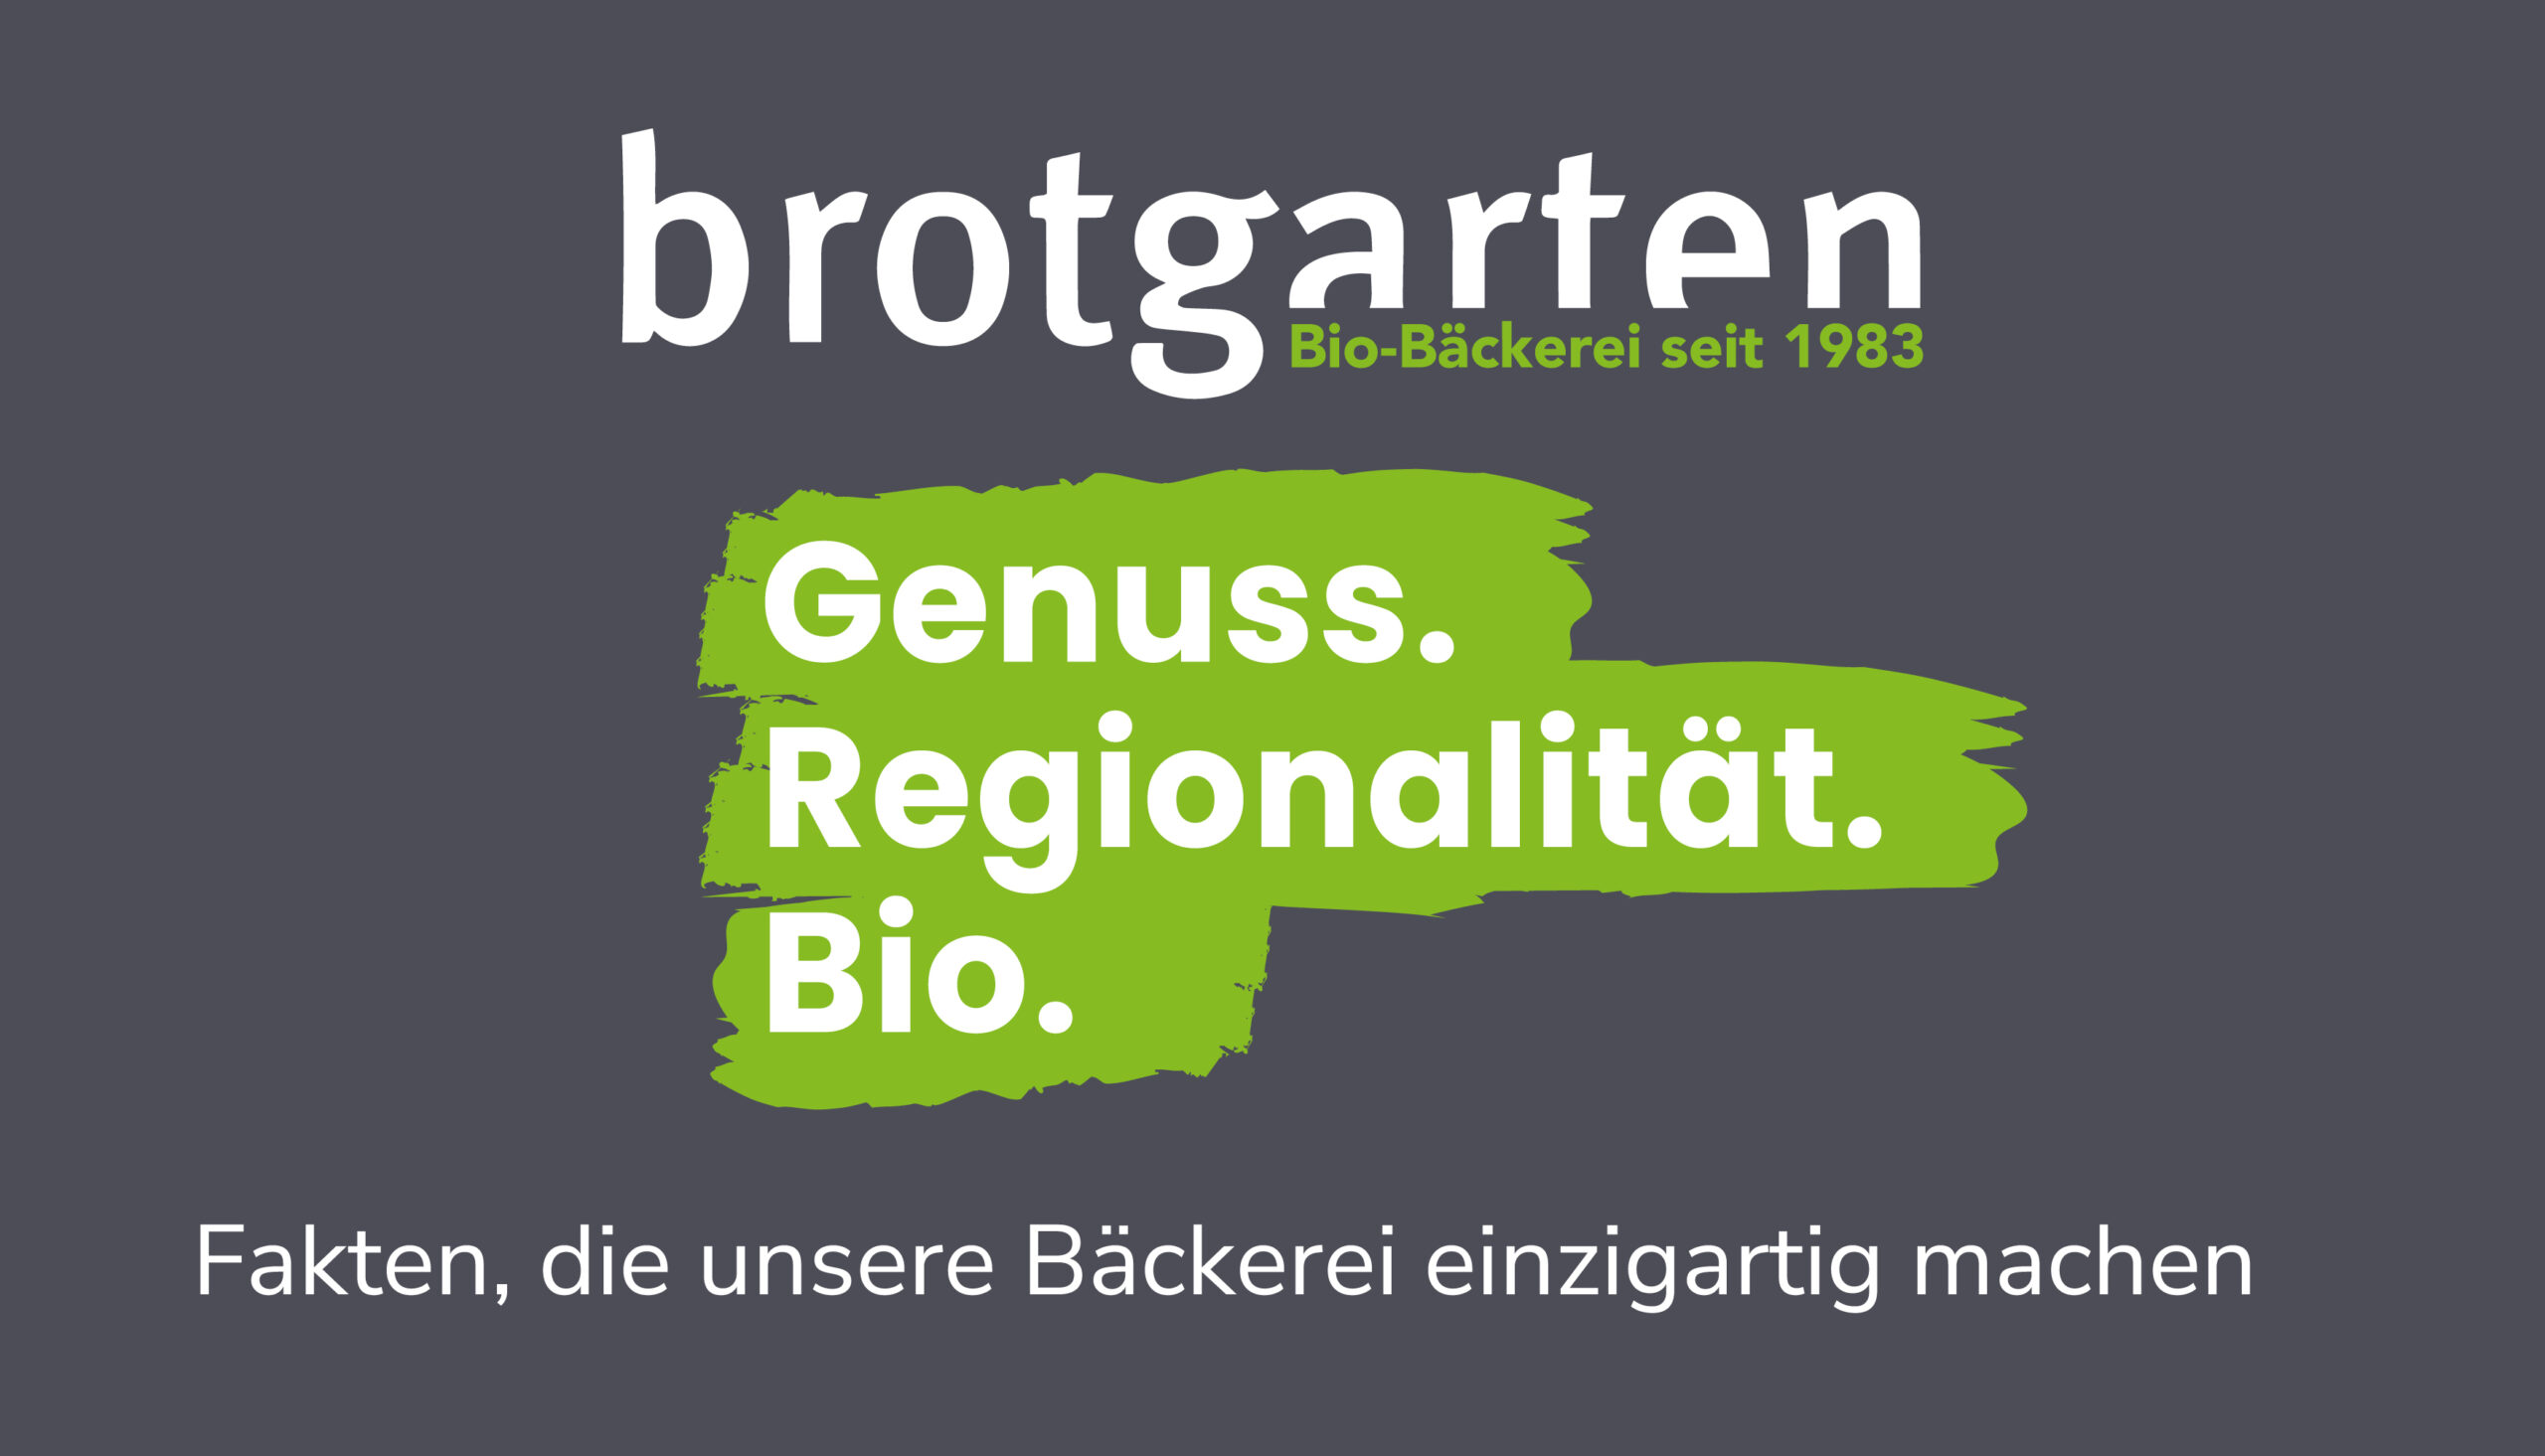 Brotgarten Bio-Bäckerei: Genuss. Regionalität. Bio.